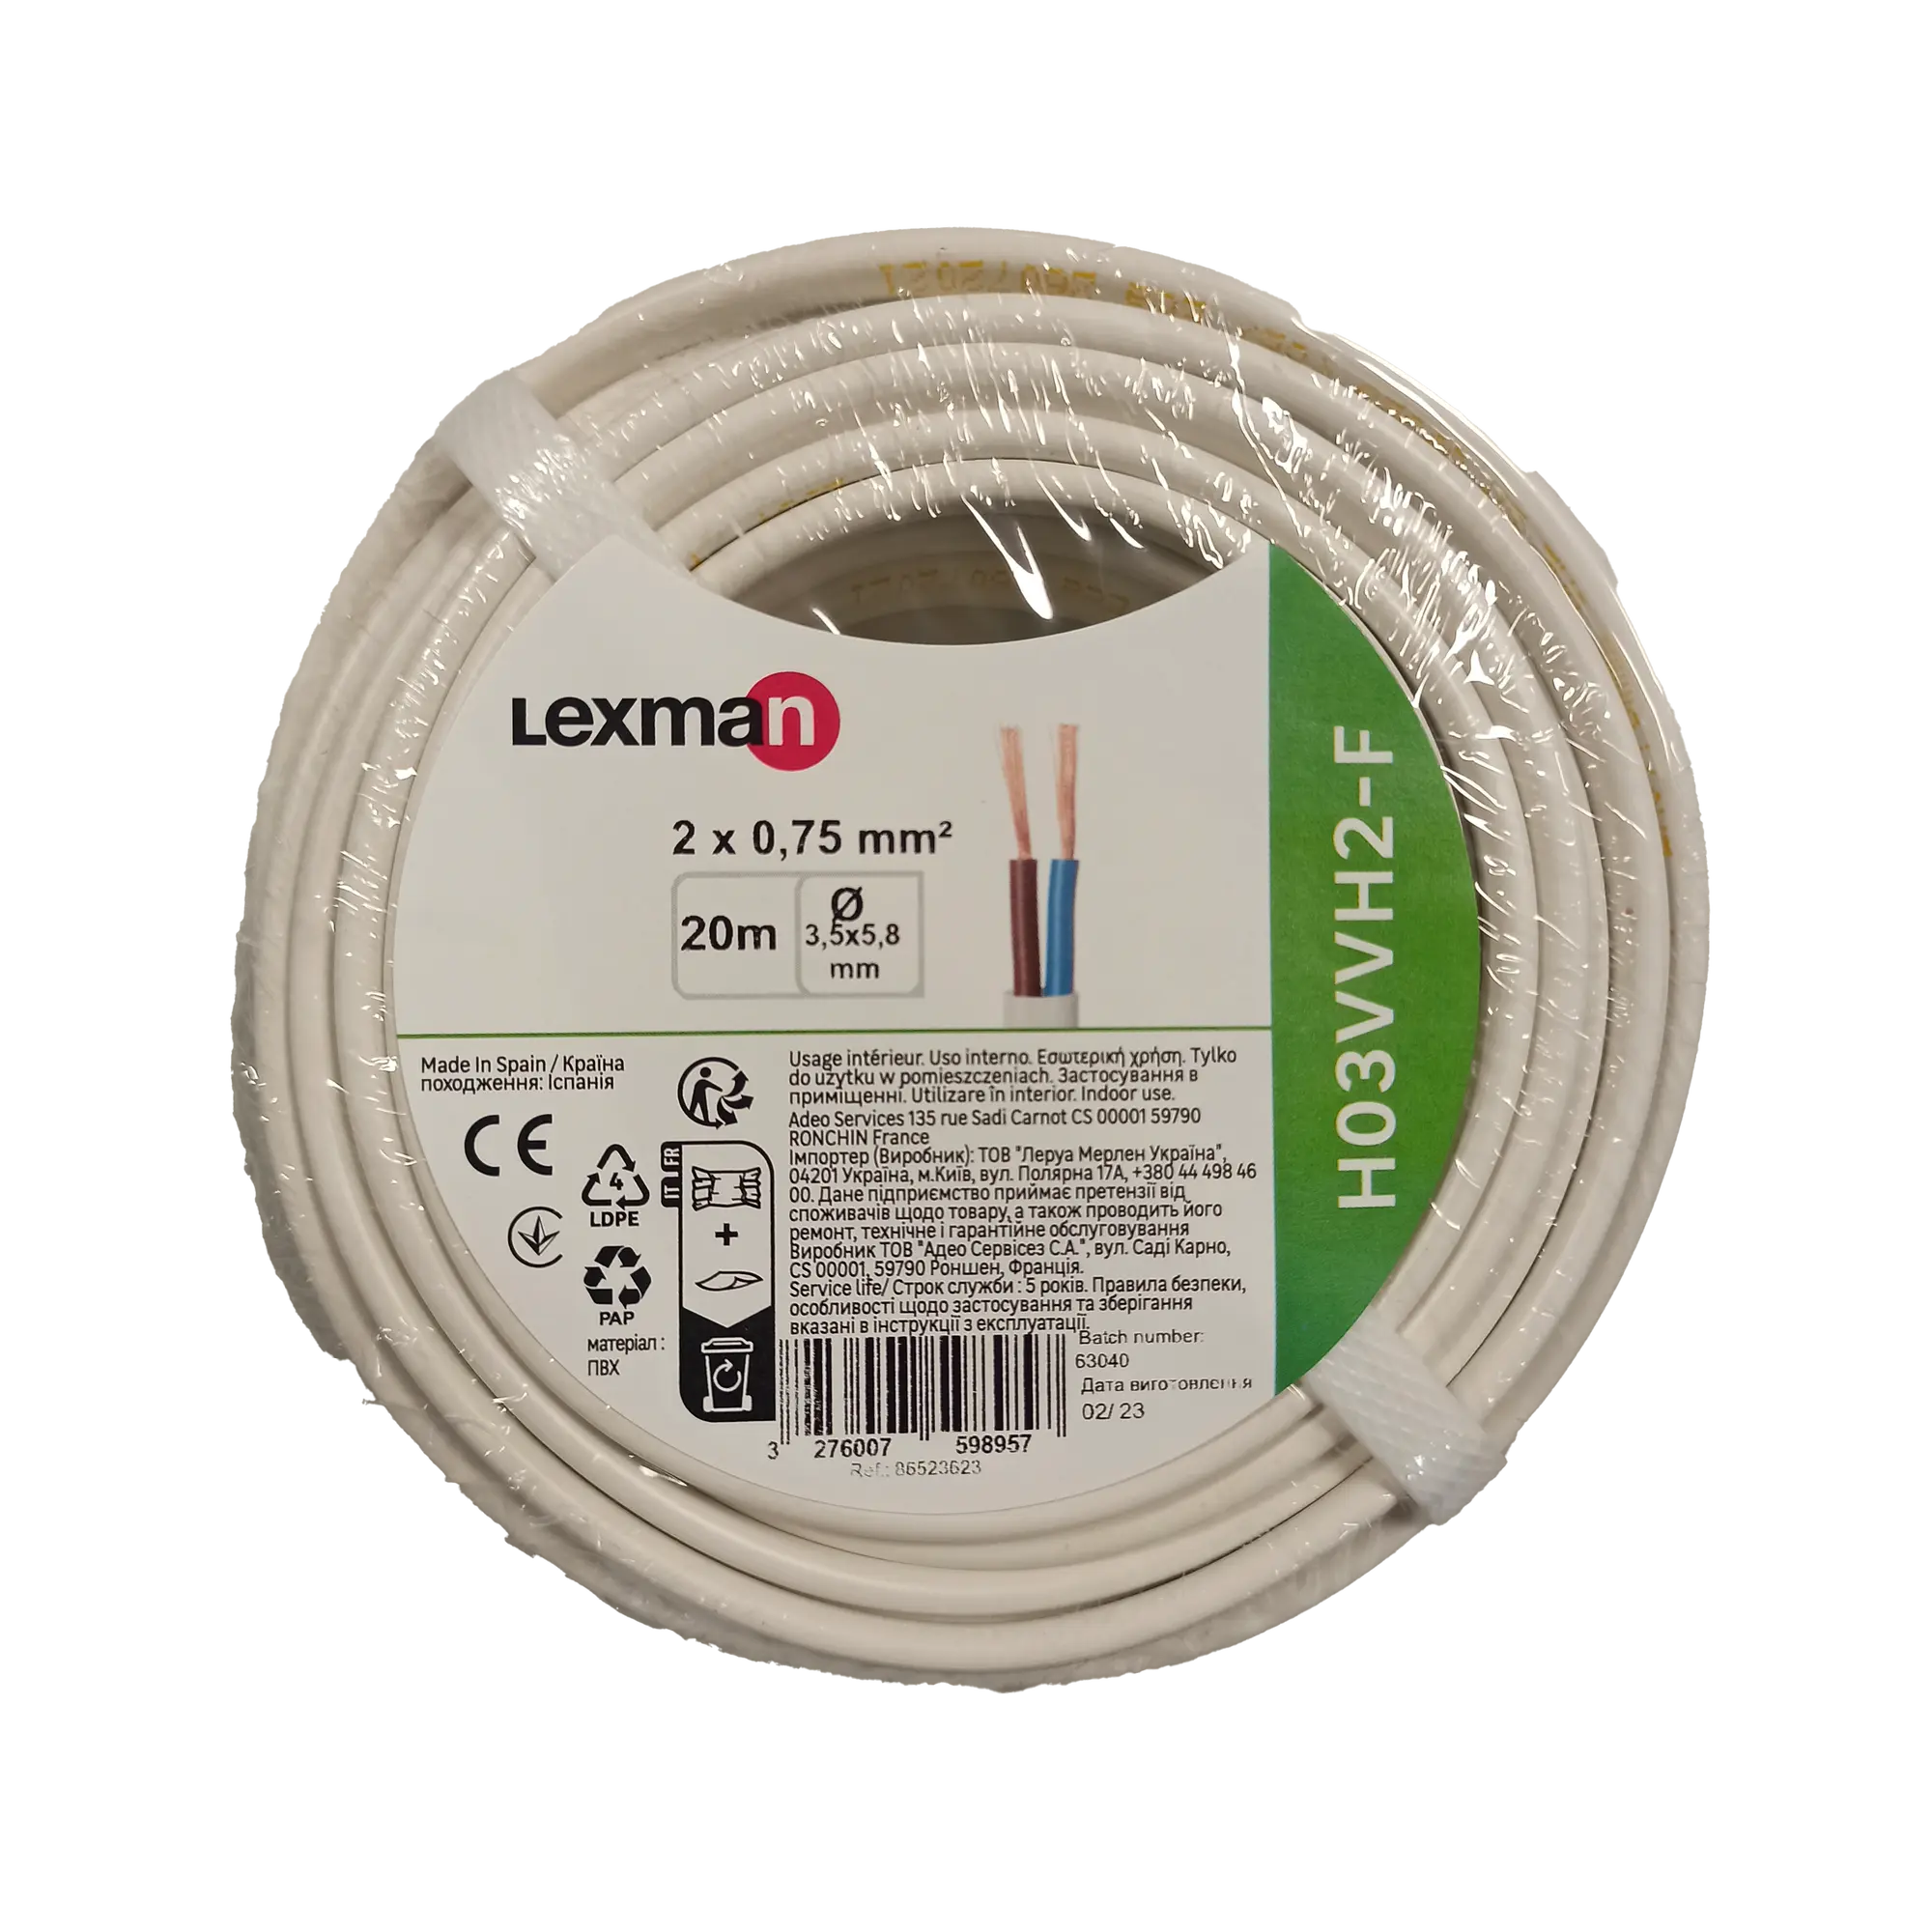 Cable eléctrico lexman h03vvh2-f de 20 m